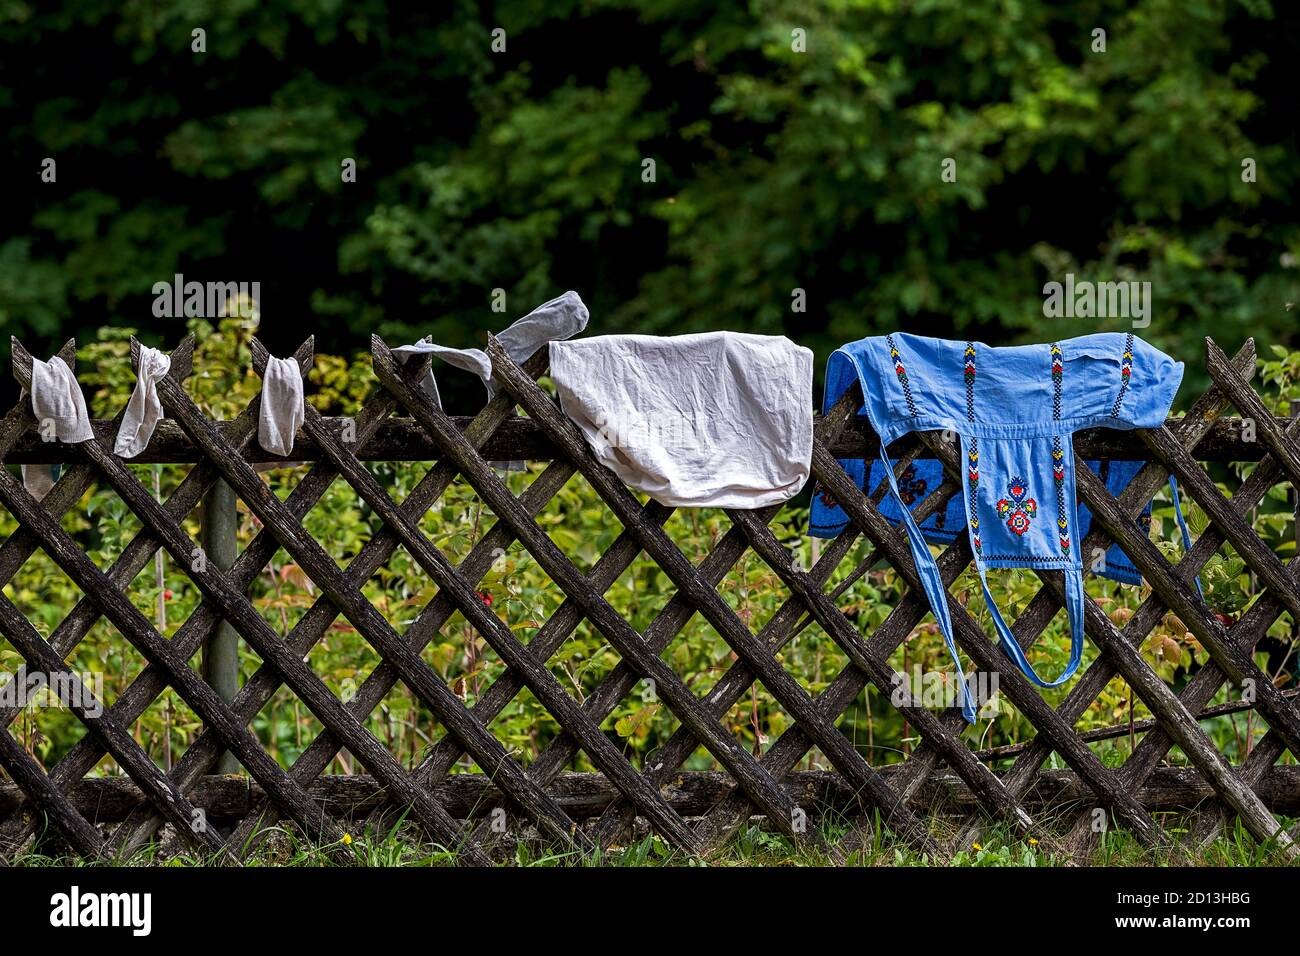 joli tablier de cuisine brodé, oreiller et chaussettes accrochés pour sécher sur une clôture Banque D'Images